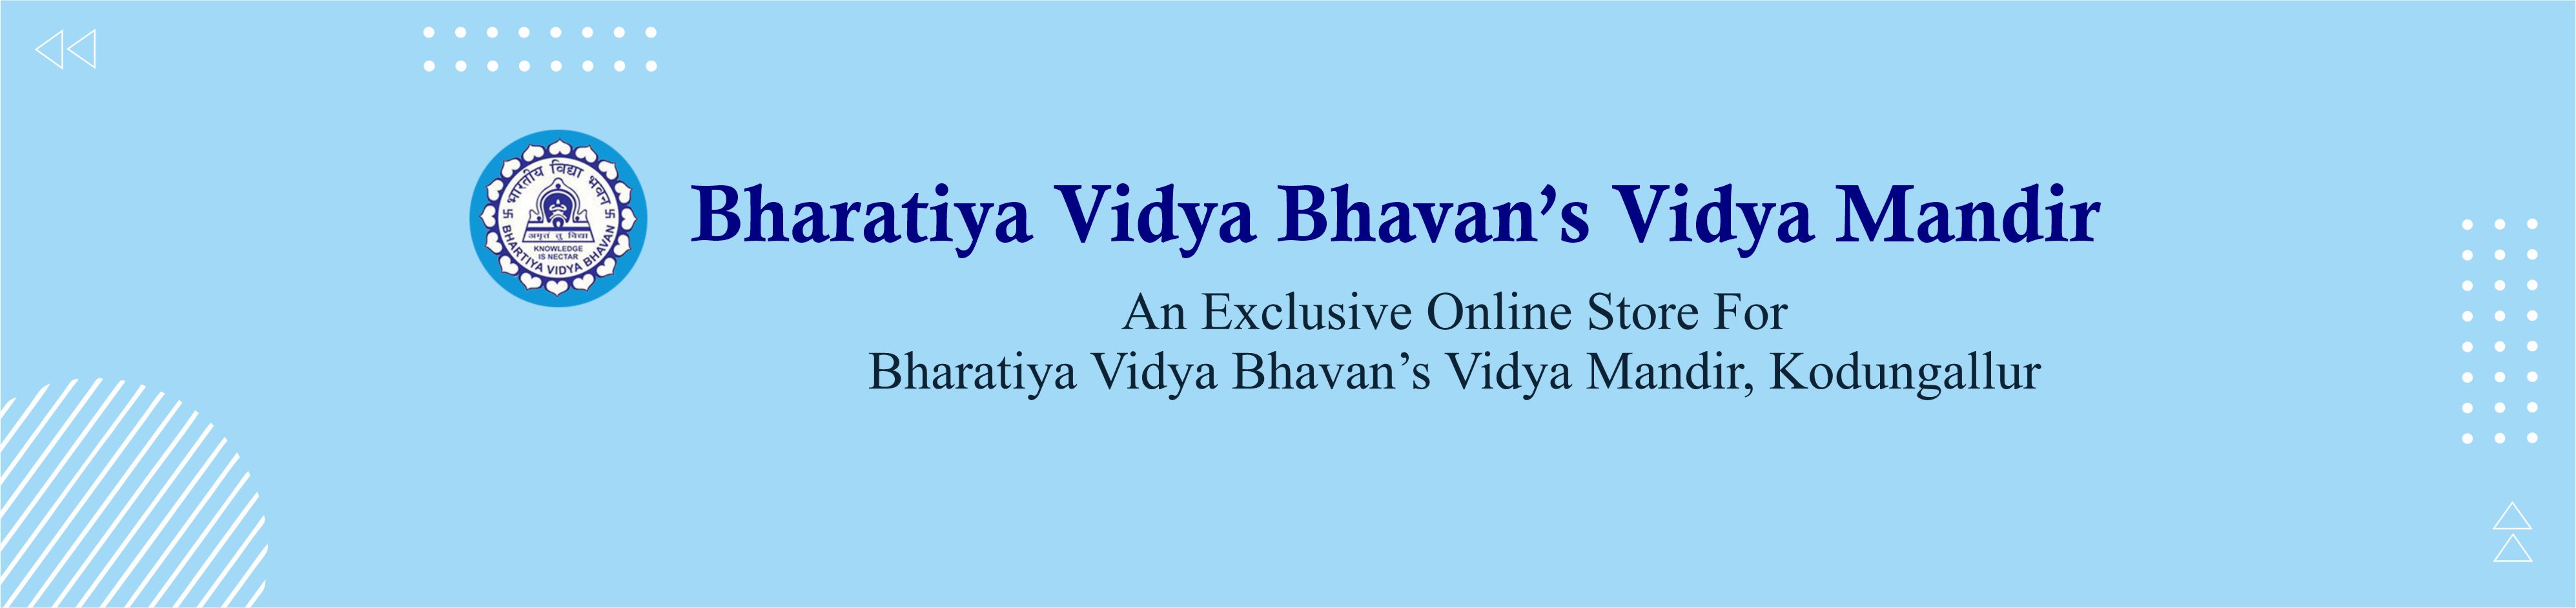 Bharatiya Vidya Bhavan Banner